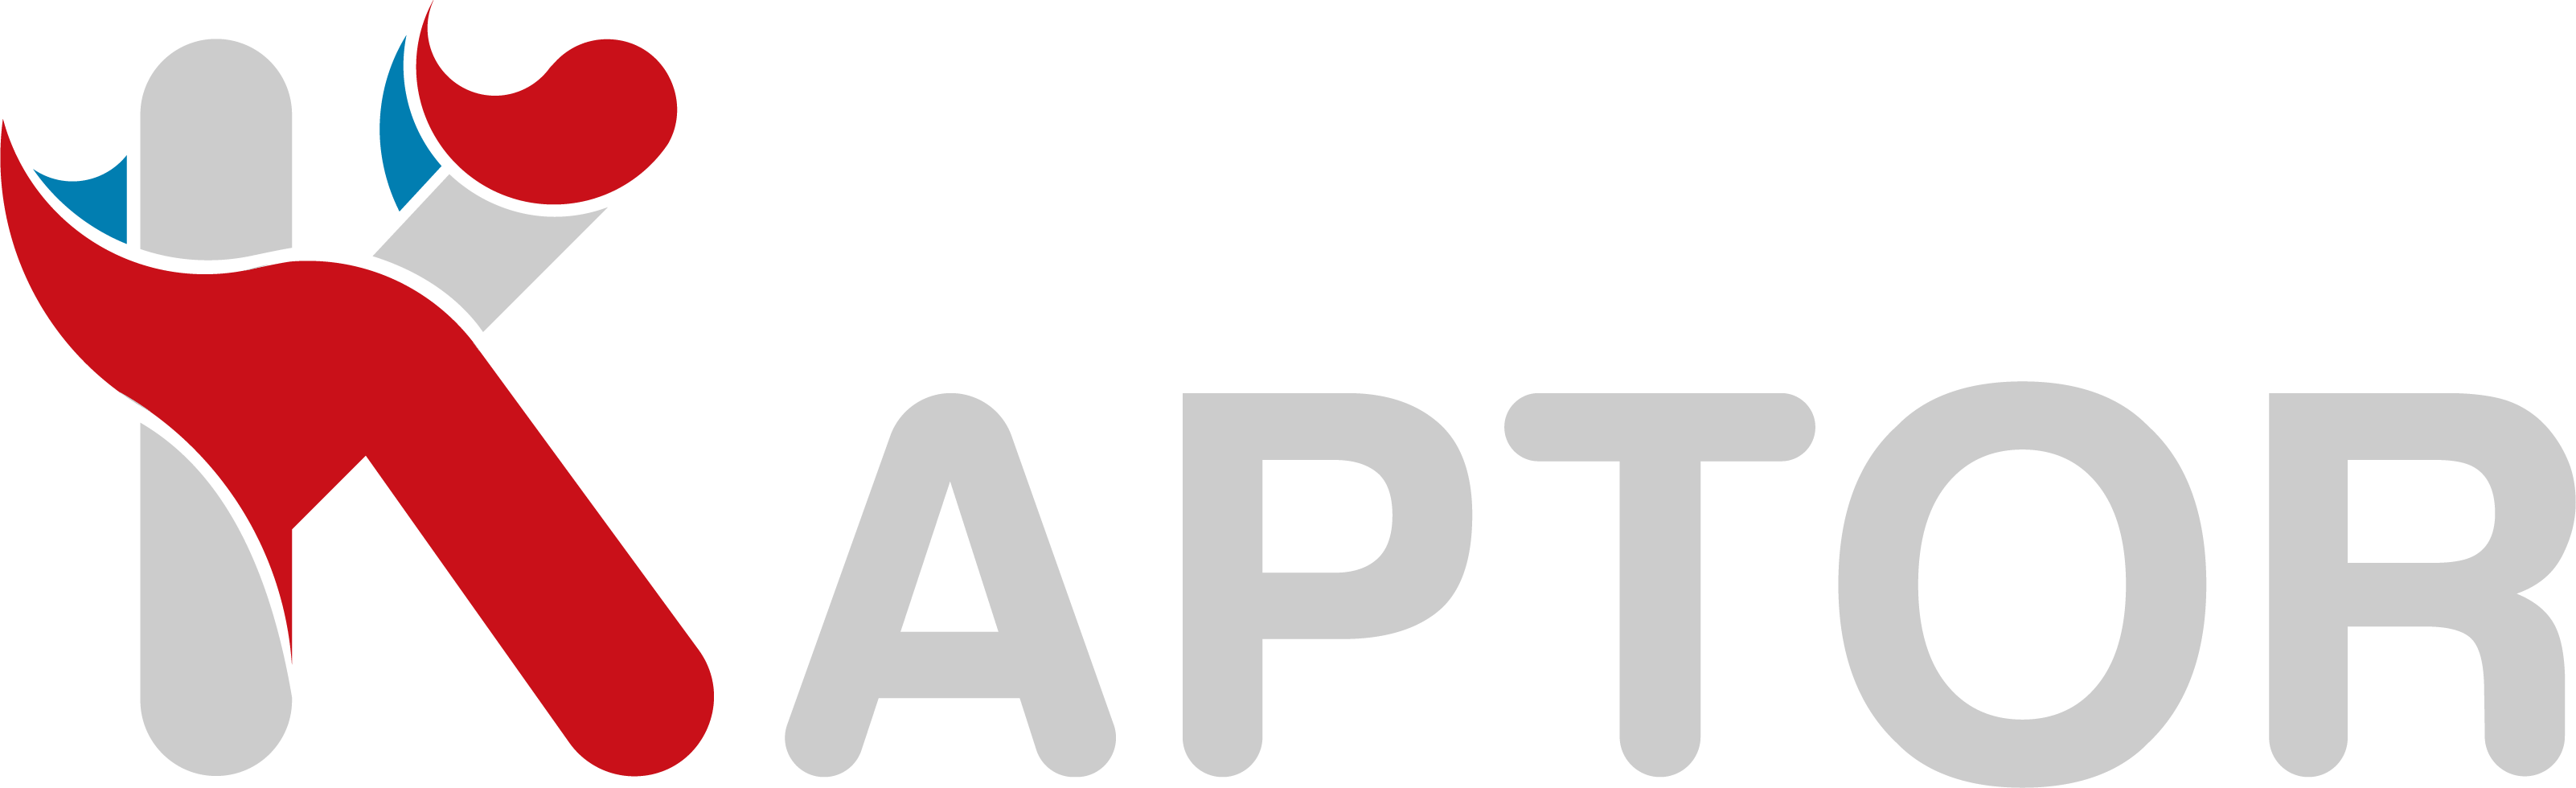 Logo Kaptor